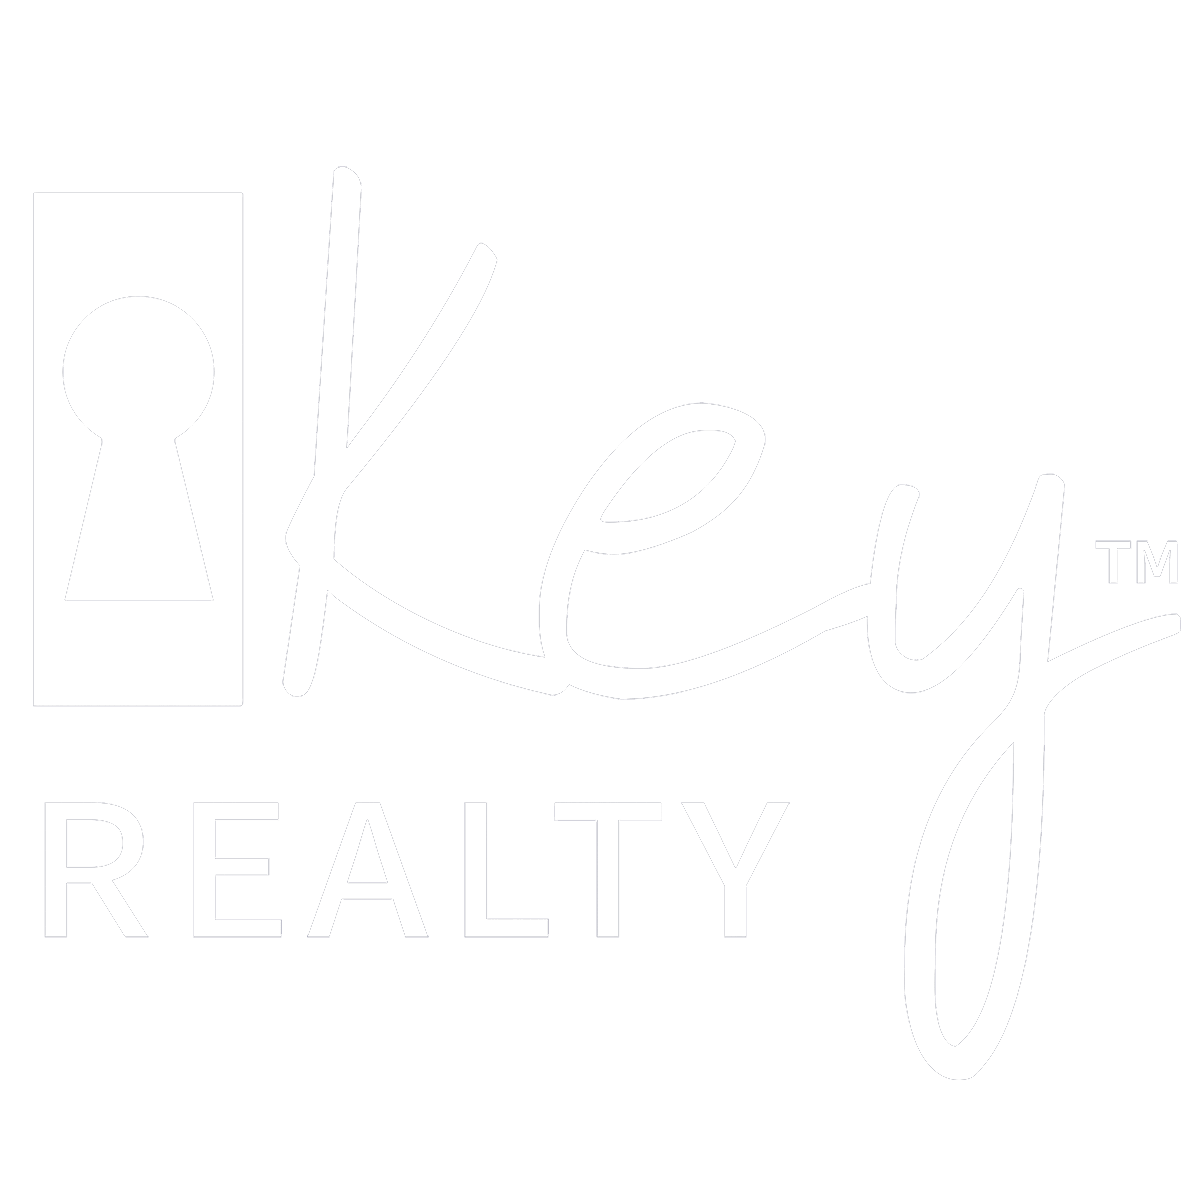 Key Realty